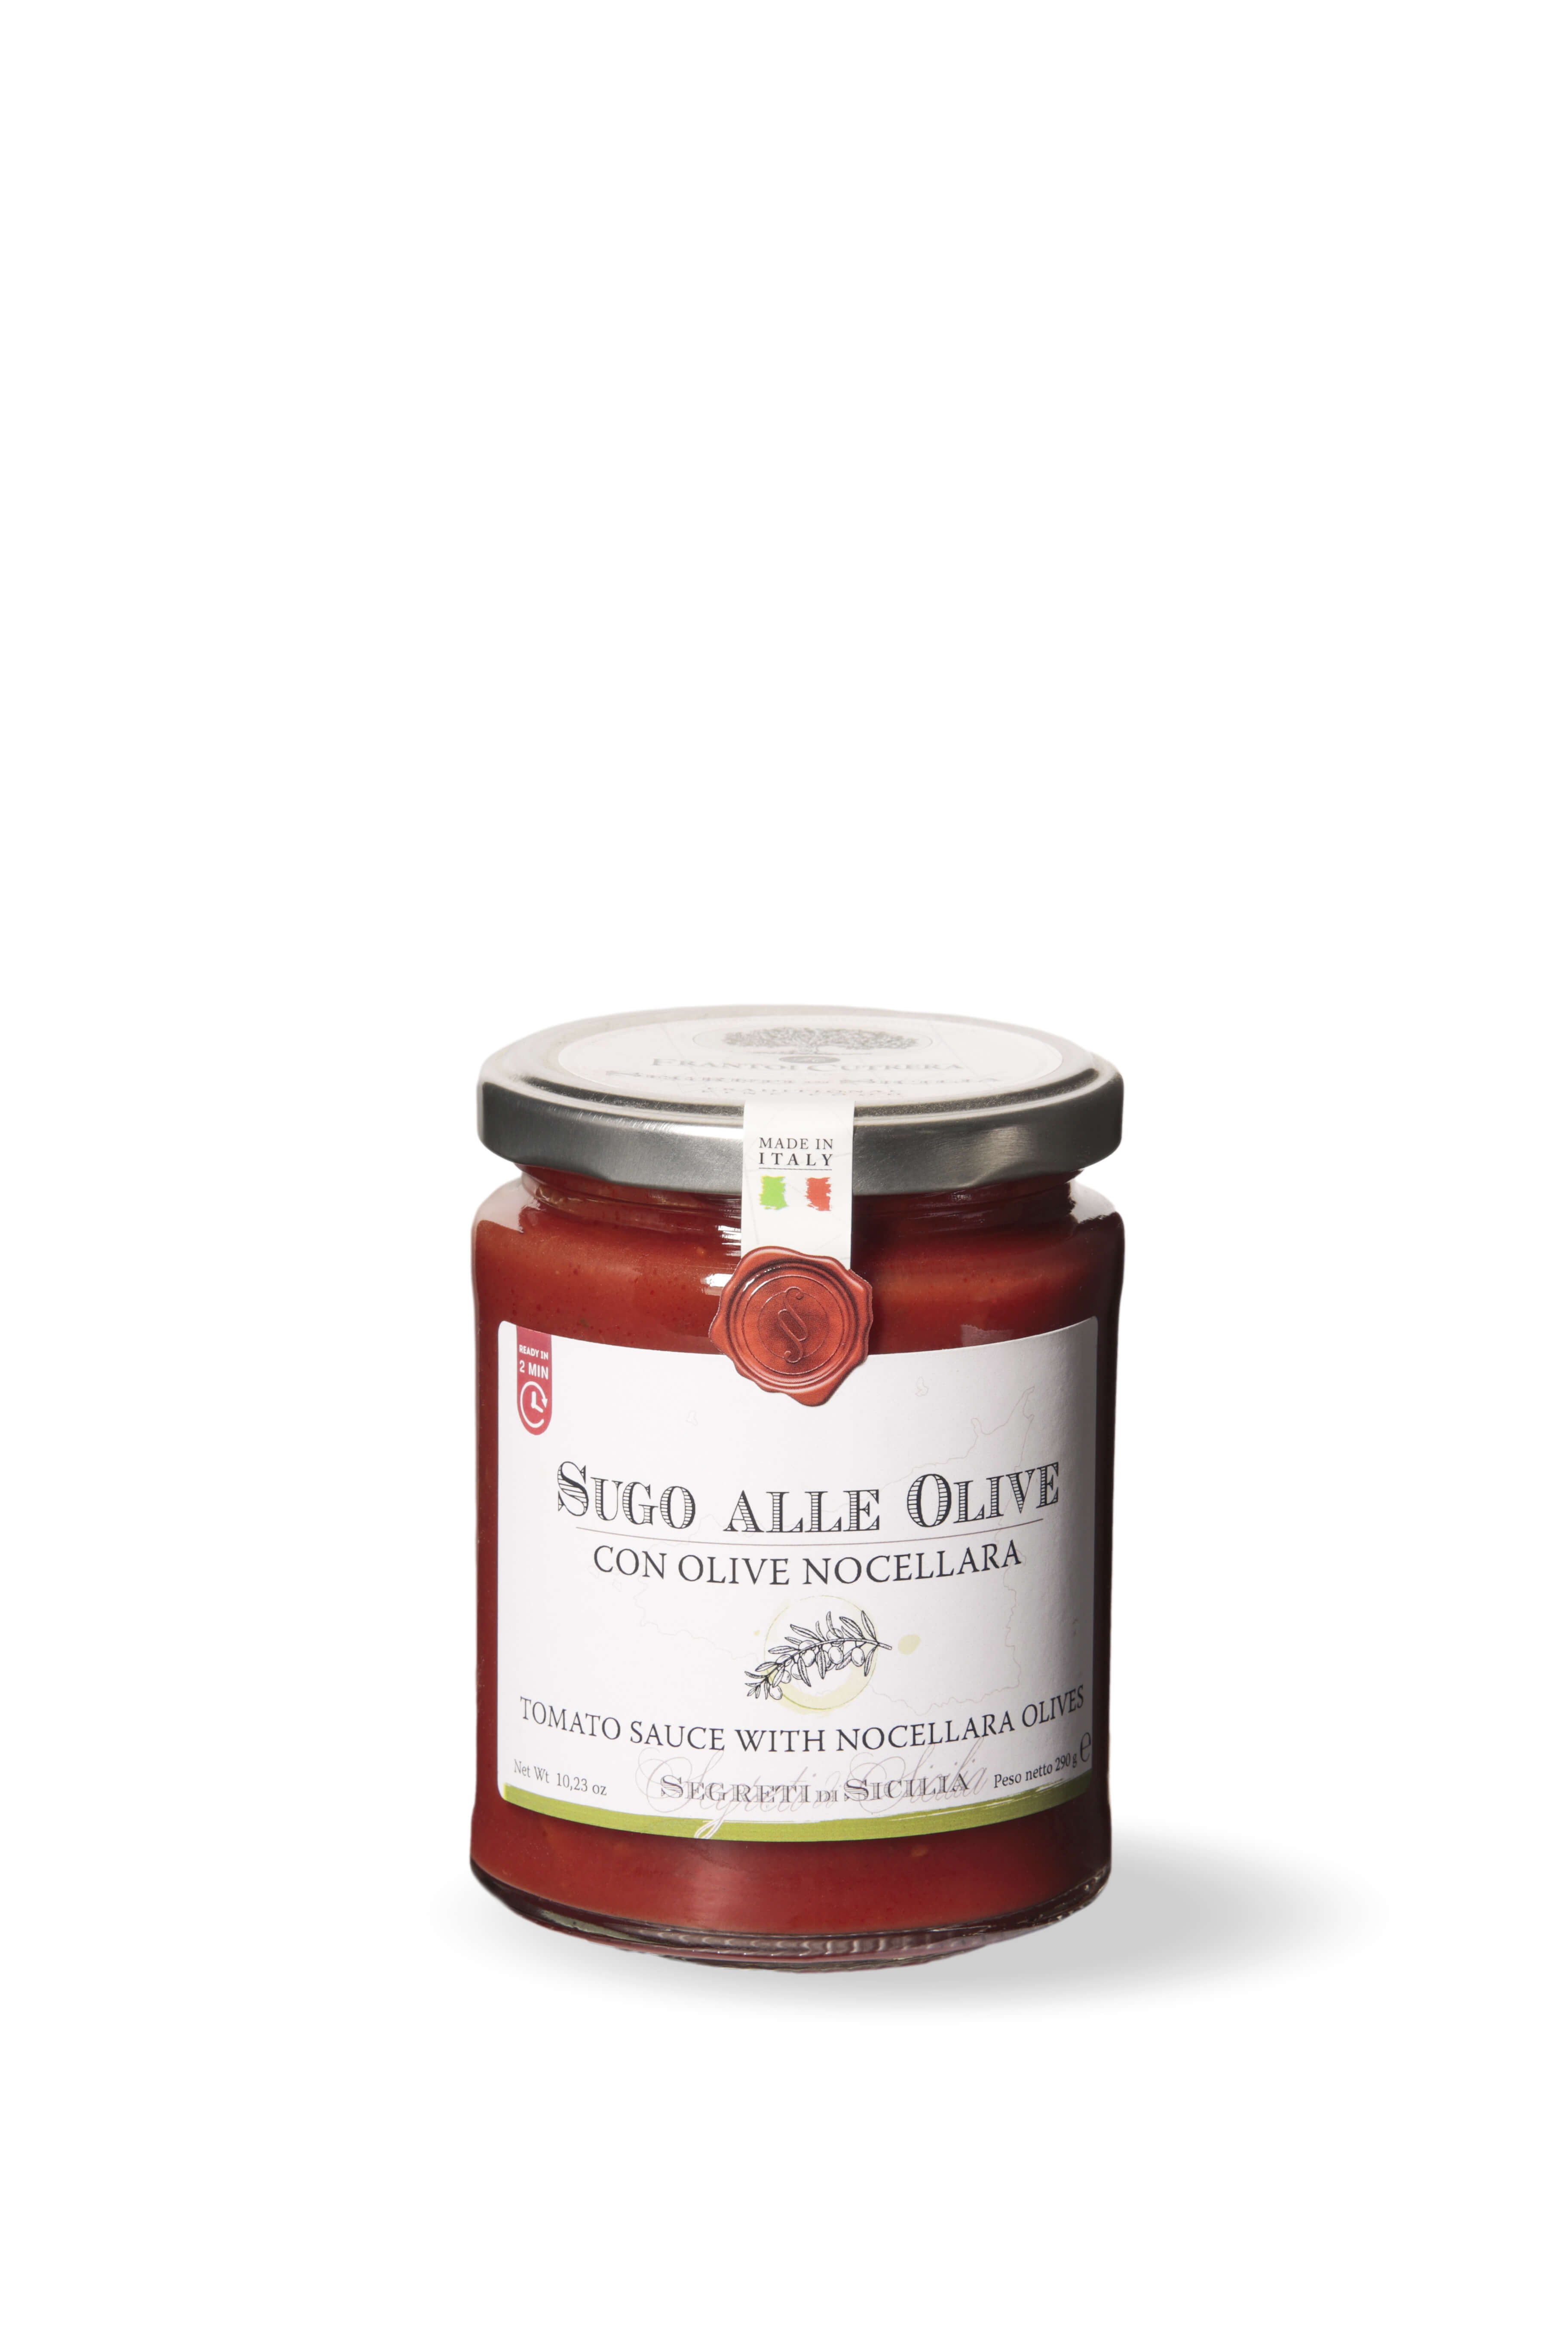 Olive sauce with Nocellara olives - Secrets of Sicily